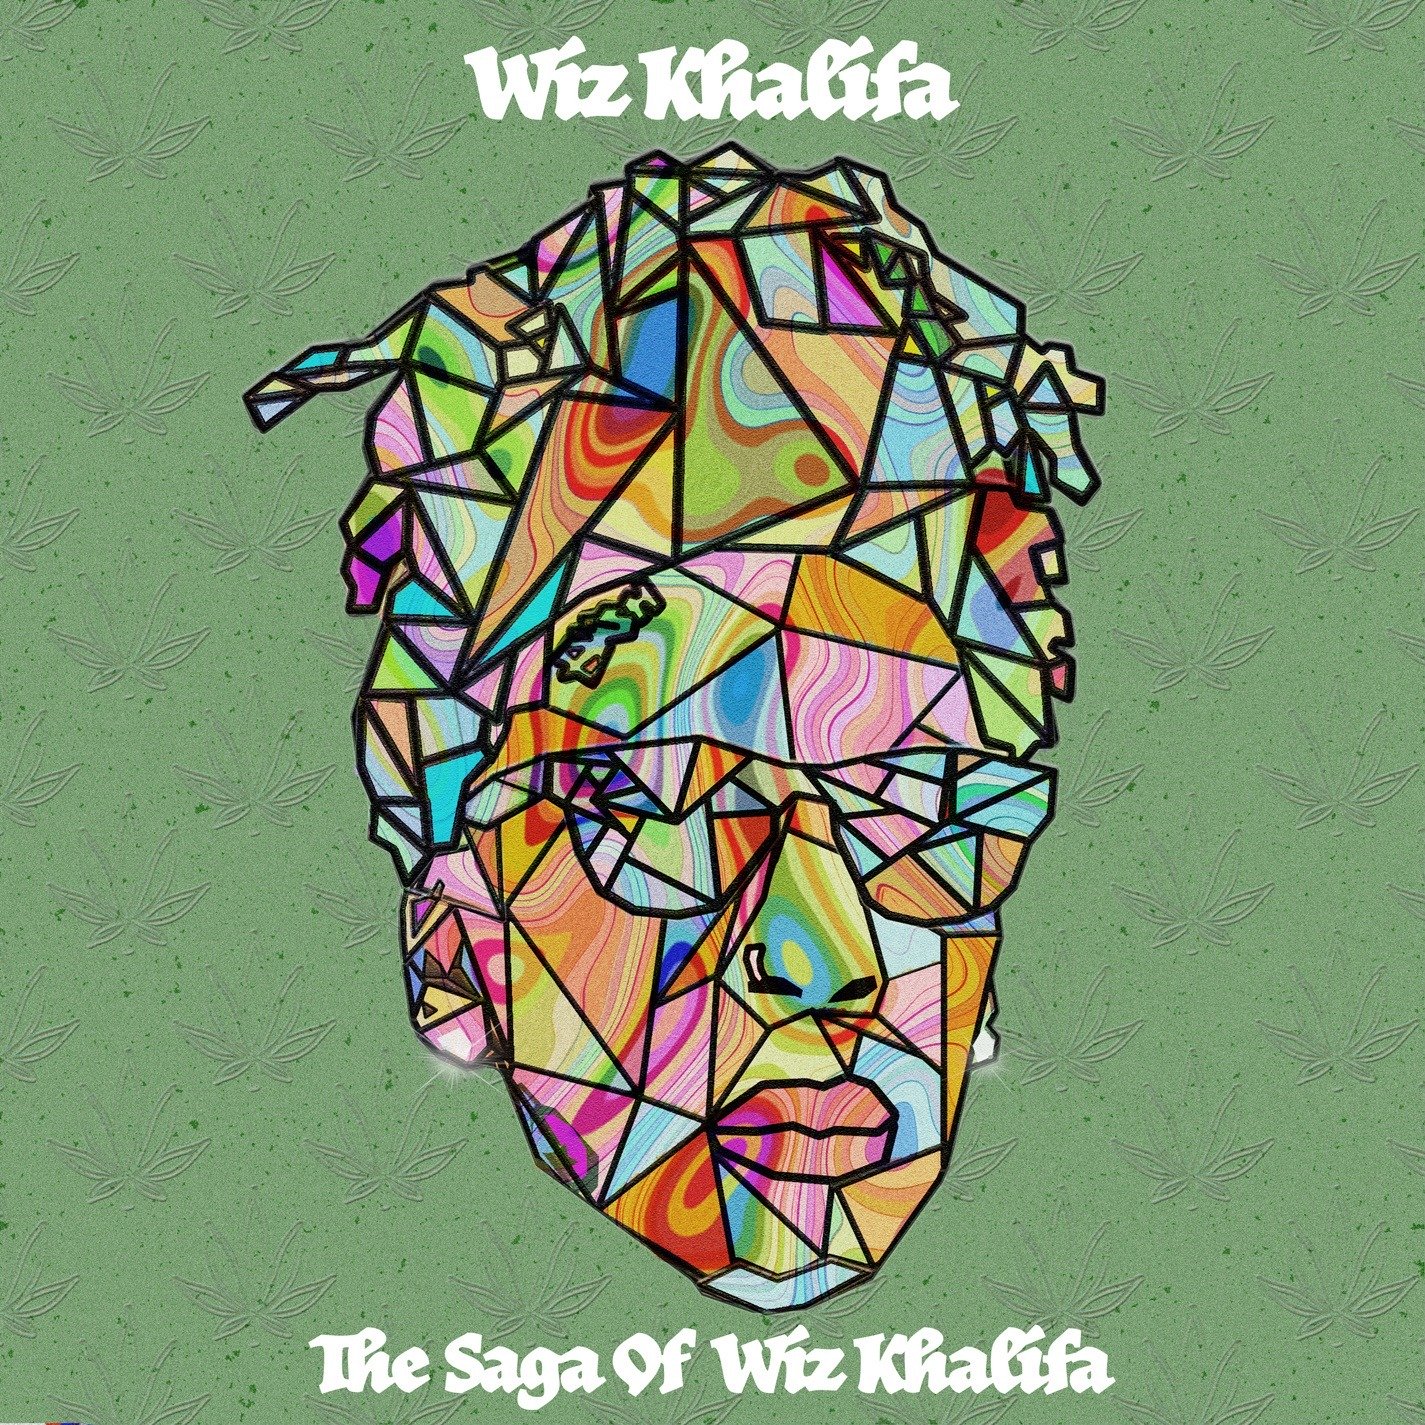 Wiz Khalifa Celebrates 4/20 With 'The Saga Of Wiz Khalifa' EP